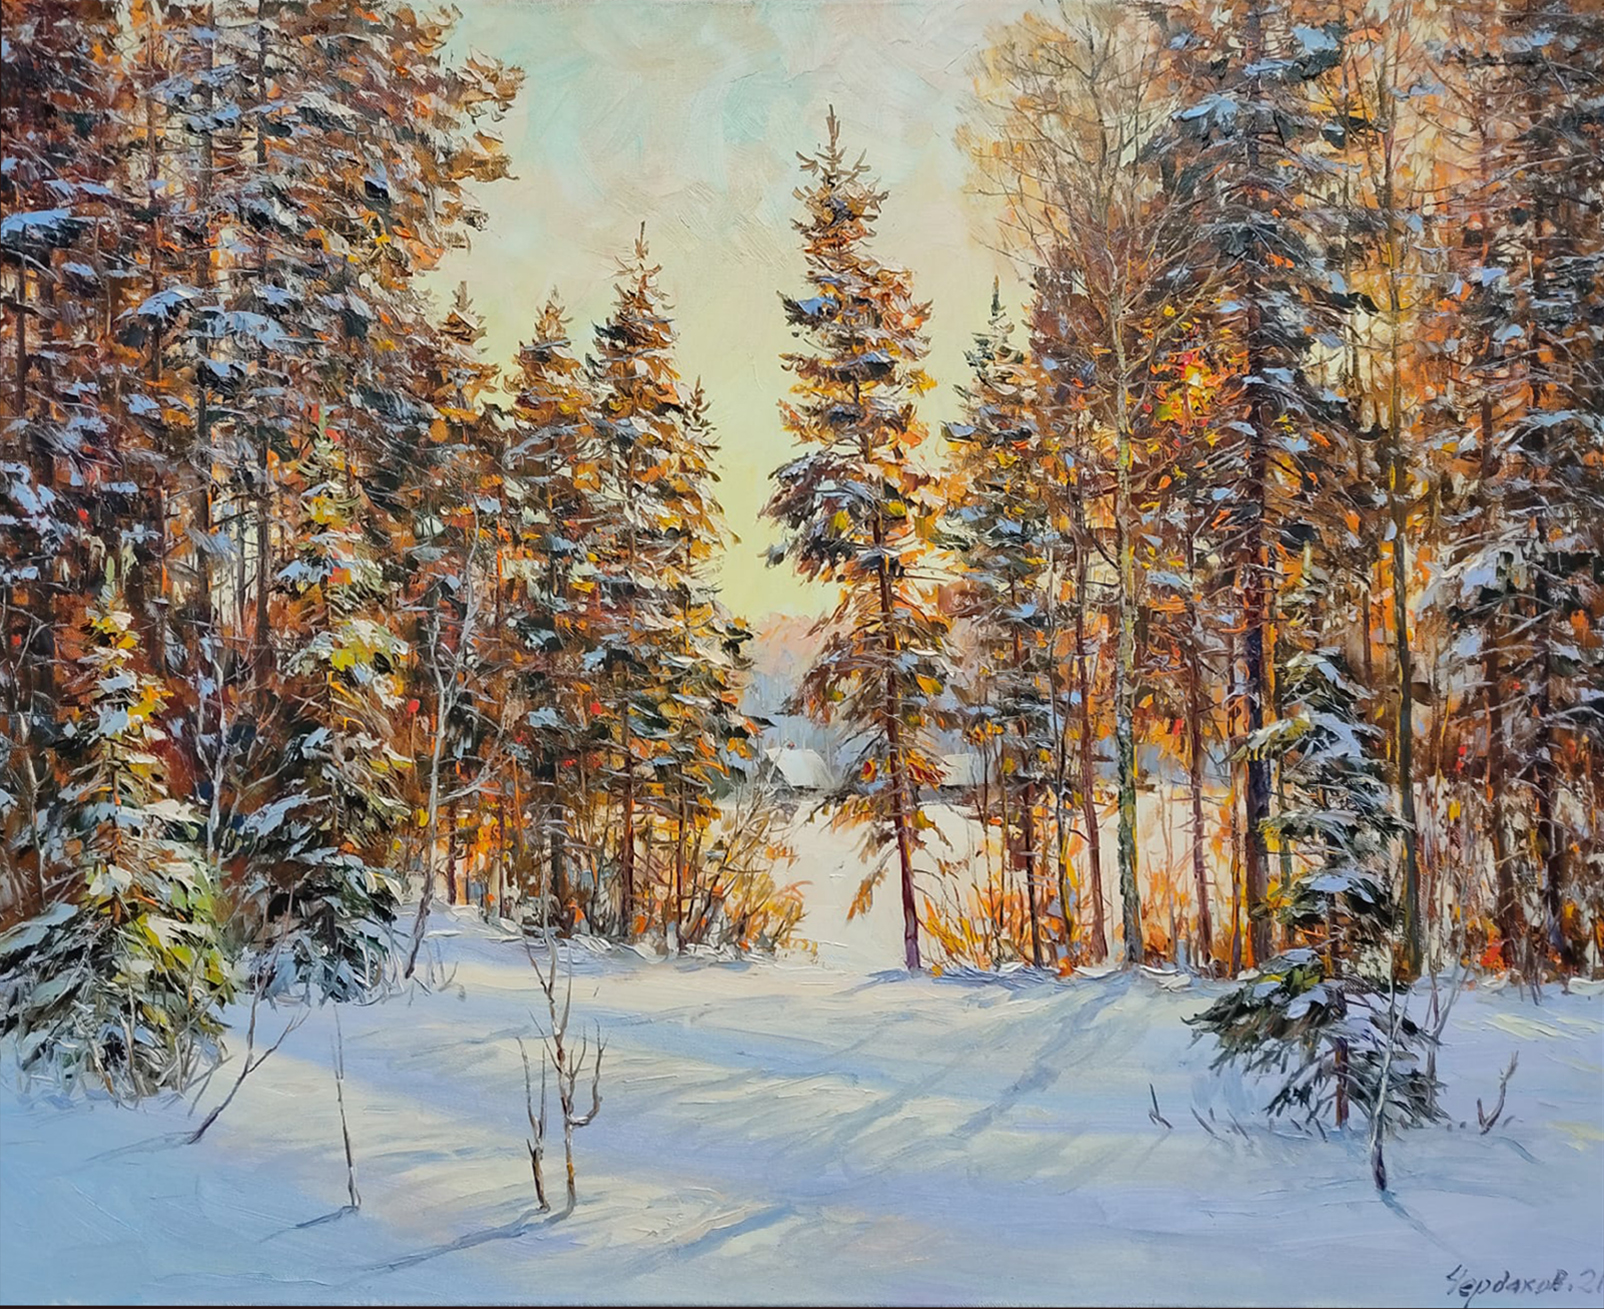 Bright Day in January - 1, Vyacheslav Cherdakov, Buy the painting Oil